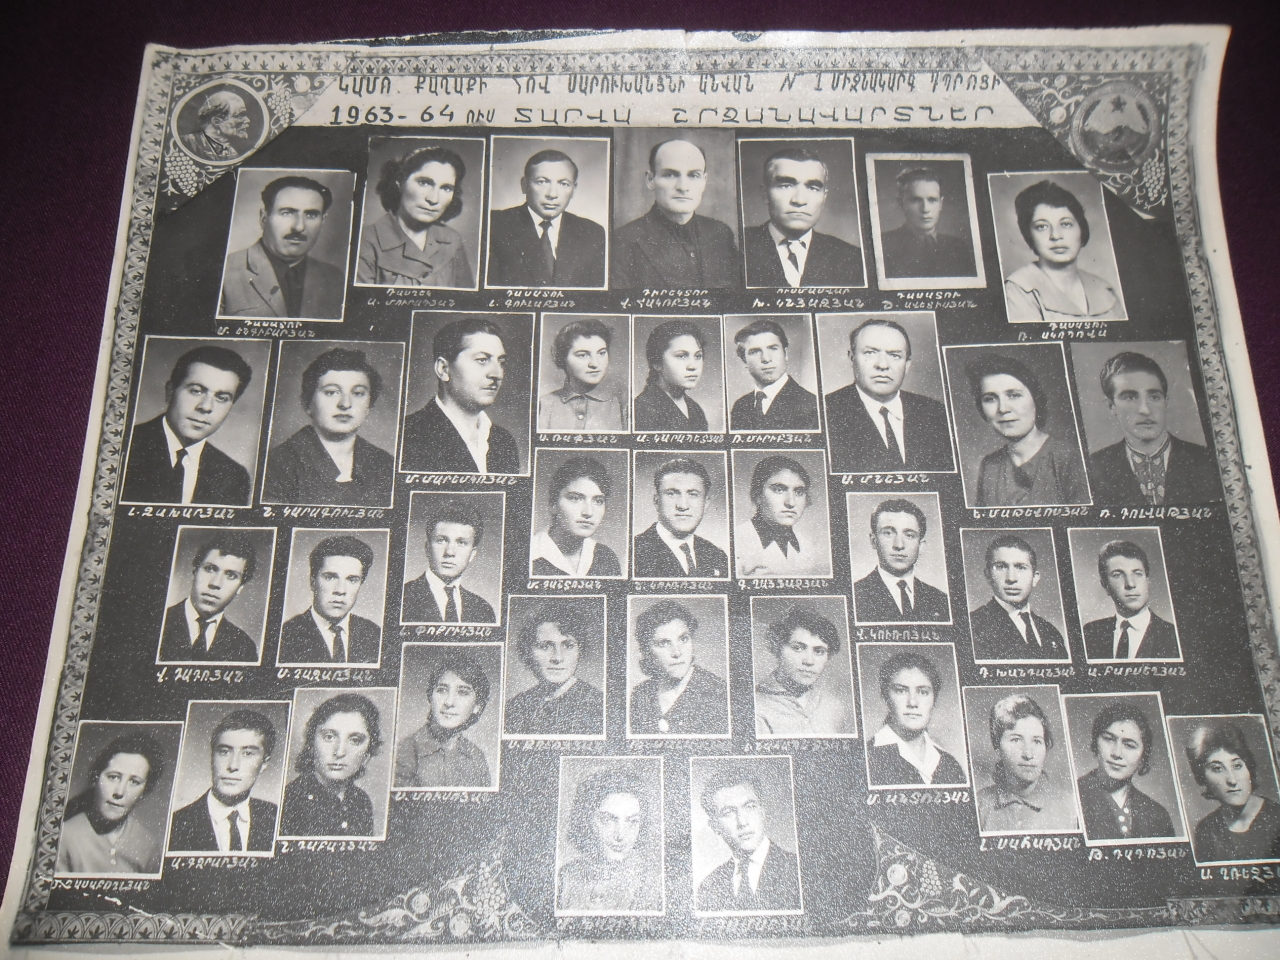 Կամո քաղաքի Հովհ. Սարուխանյանի անվան միջնակարգ դպրոցի 1963-64 ուս. տարվա շրջանավարտներ